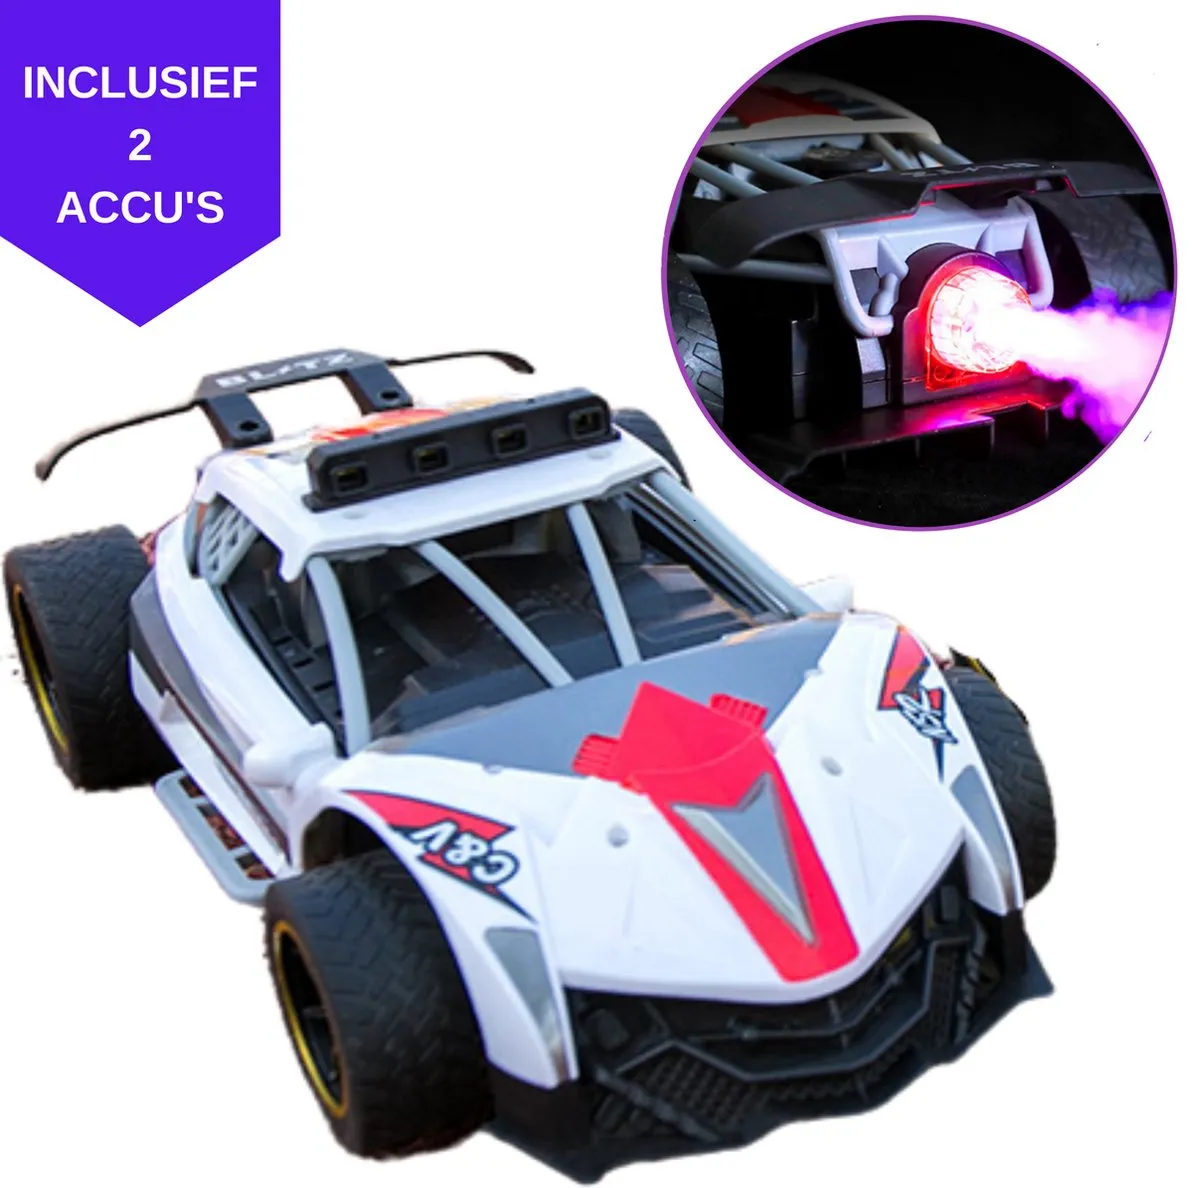 Forgoods Afstandsbestuurbare Auto - RC Auto - Snelle Auto met Rook en Verlichtingseffecten - Inclusief 2 Accu's speelgoed